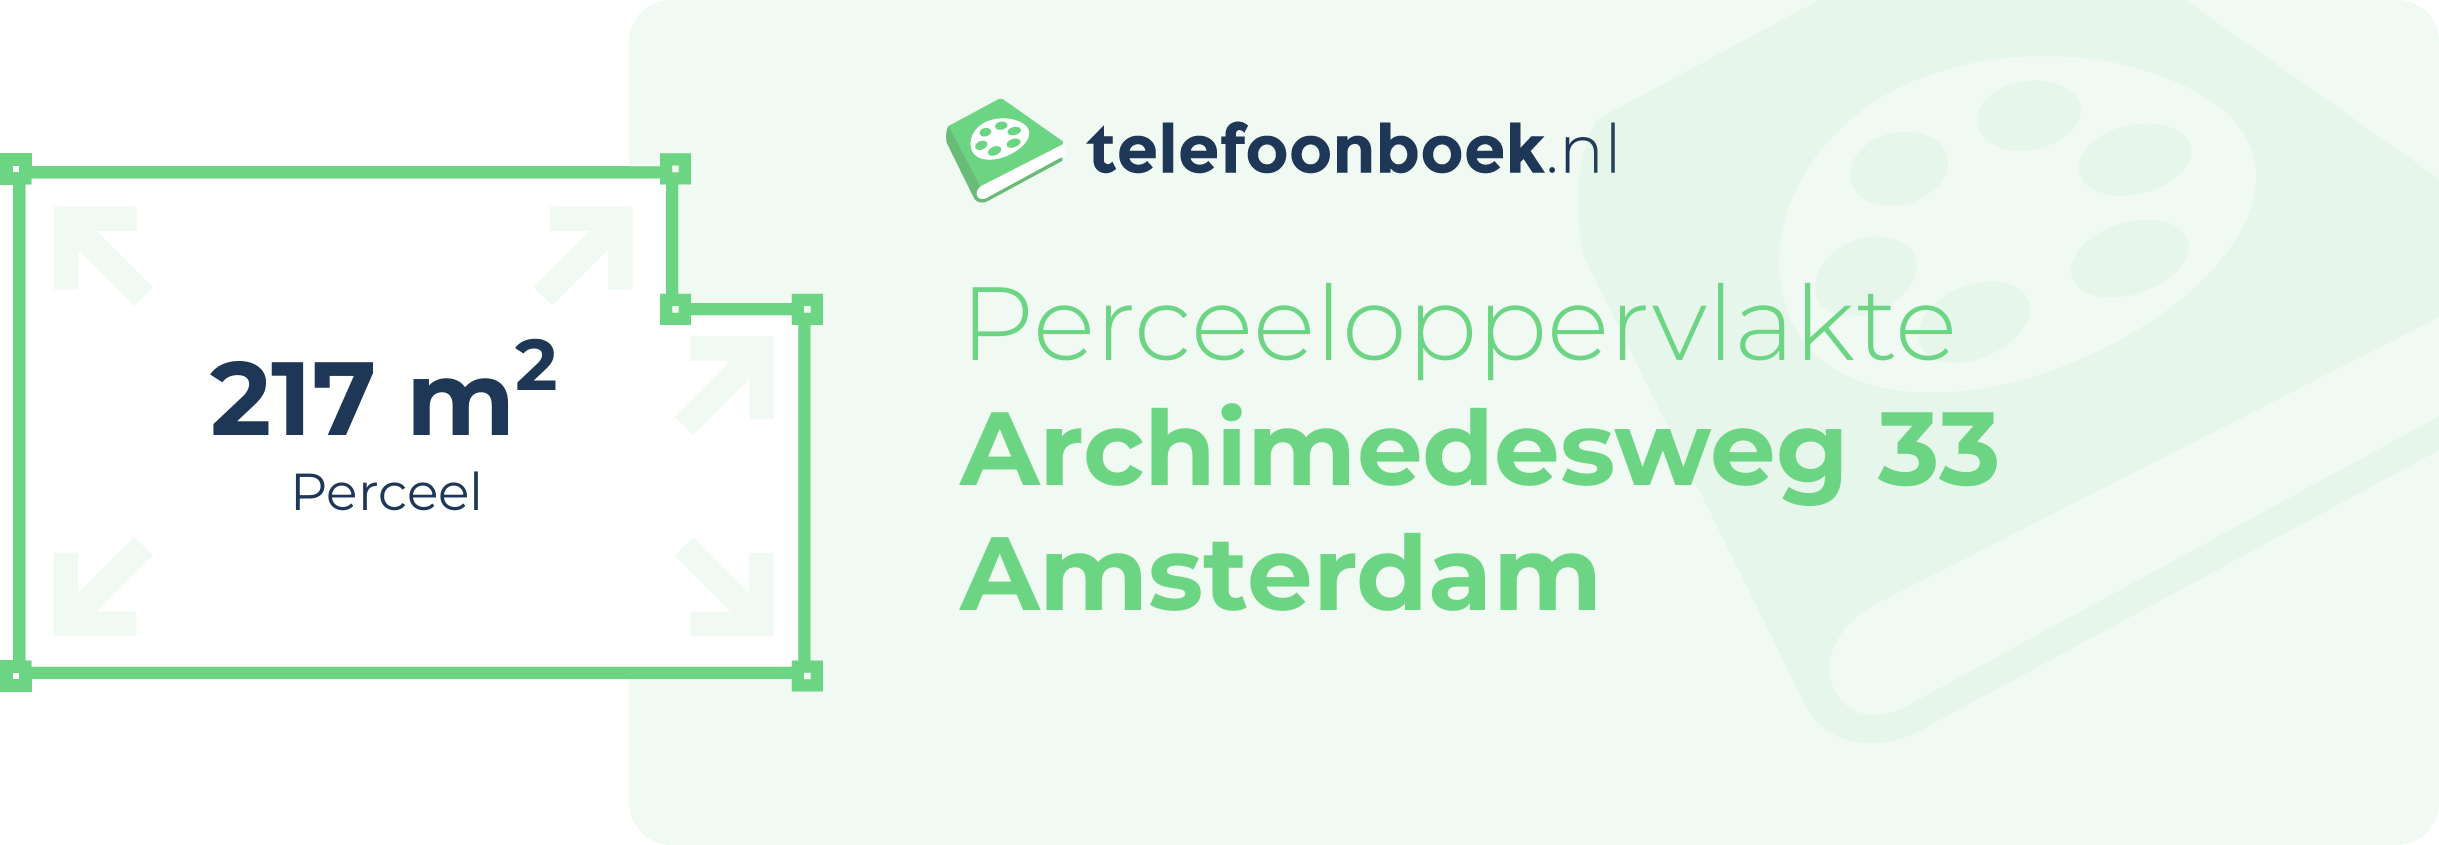 Perceeloppervlakte Archimedesweg 33 Amsterdam